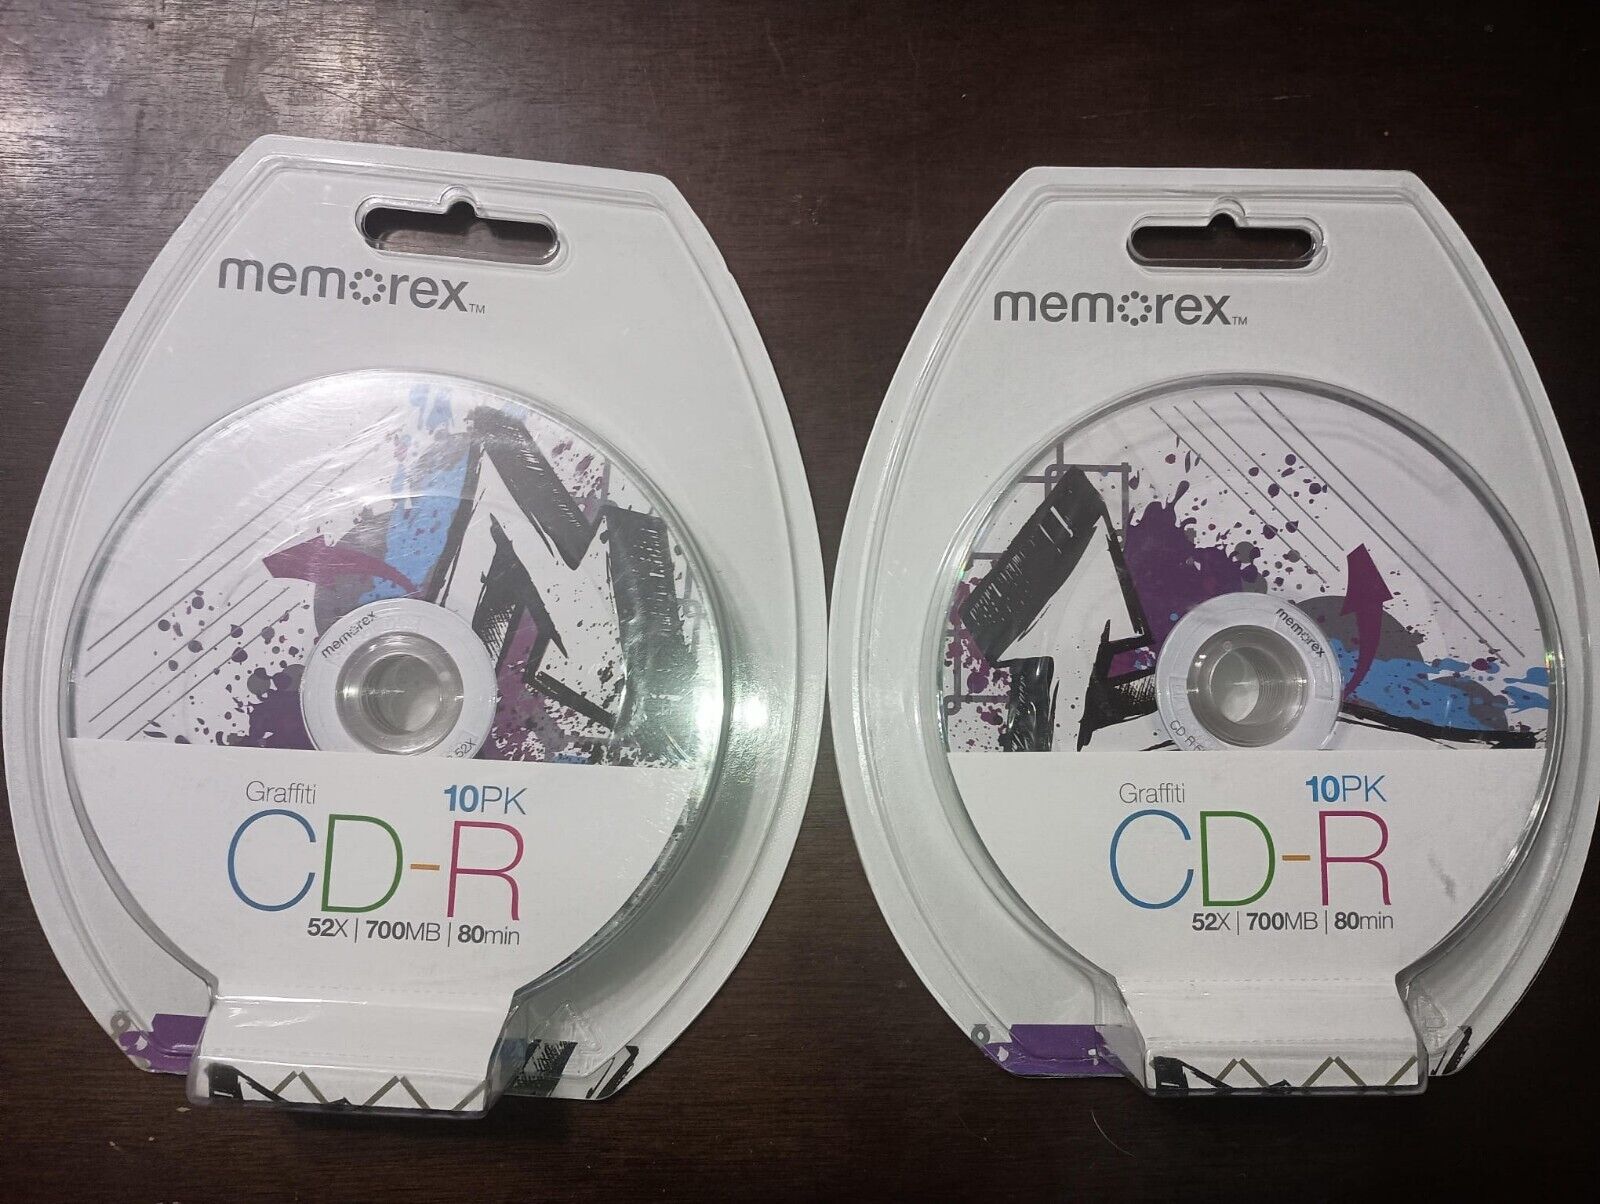 NEW Memorex Graffiti CD-R Bundle, 2 Packs, 10 Count Each, 52X, 700 MB, 80 Min